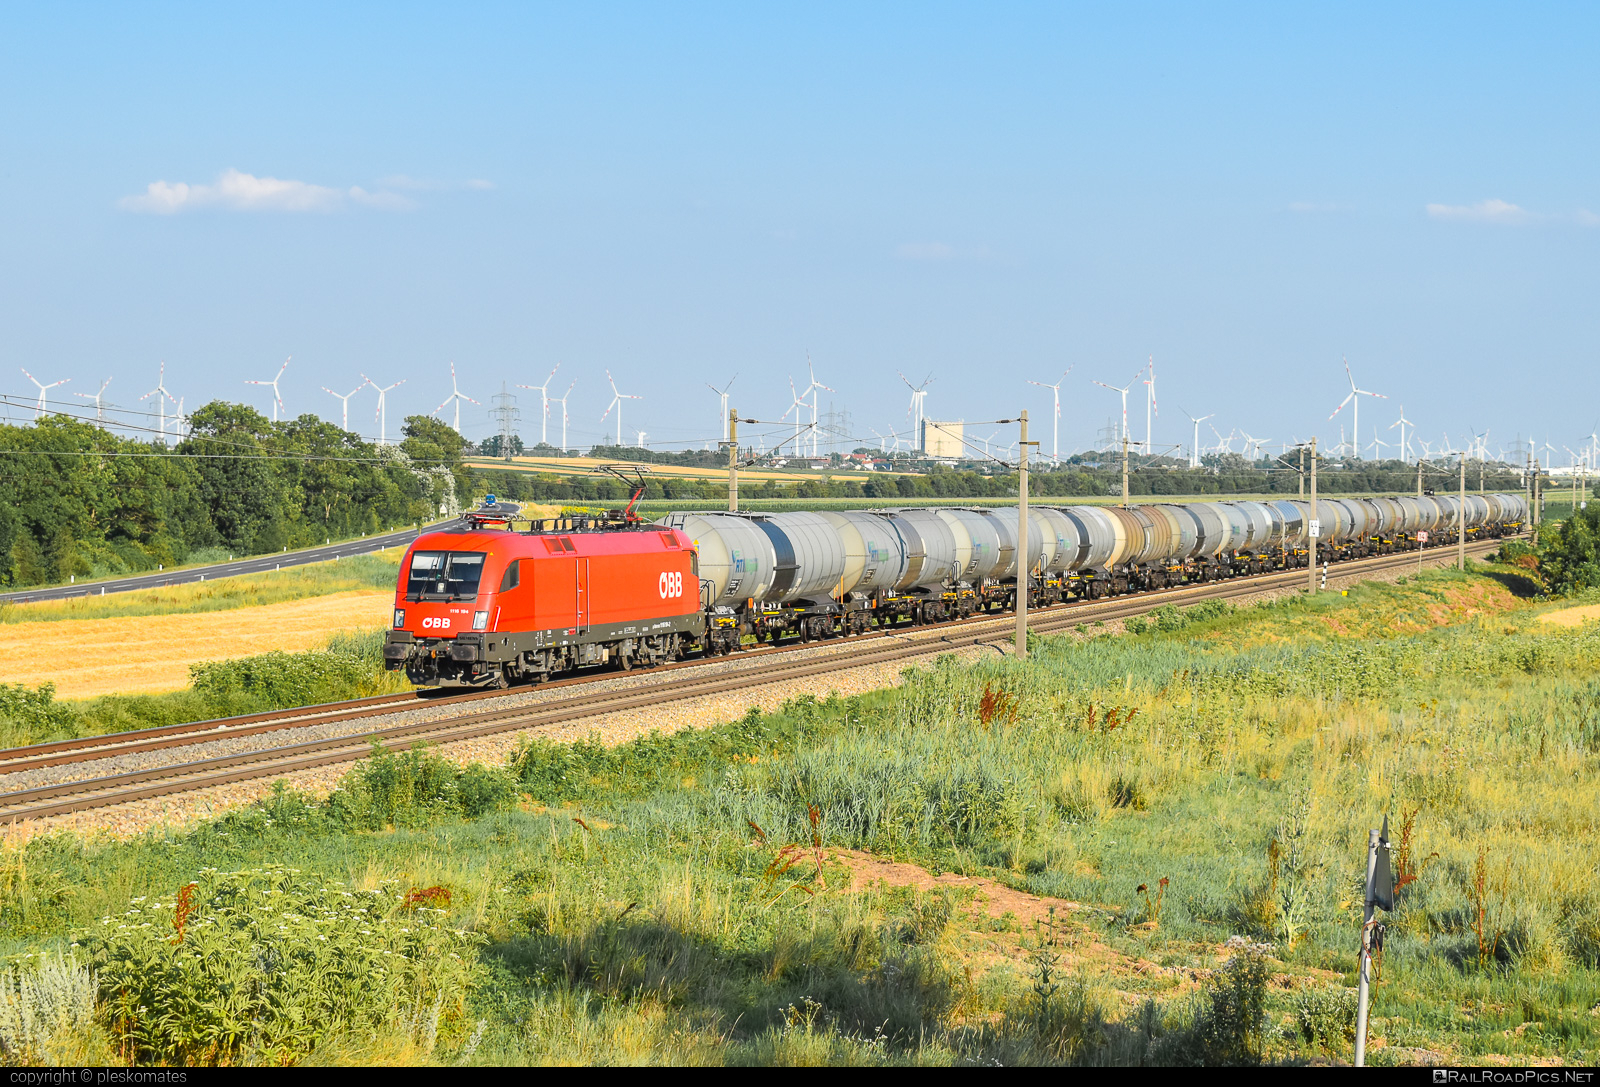 Siemens ES 64 U2 - 1116 194 operated by Rail Cargo Austria AG #es64 #es64u2 #eurosprinter #kesselwagen #obb #osterreichischebundesbahnen #rcw #rtiwagon #siemens #siemensEs64 #siemensEs64u2 #siemenstaurus #tankwagon #taurus #tauruslocomotive